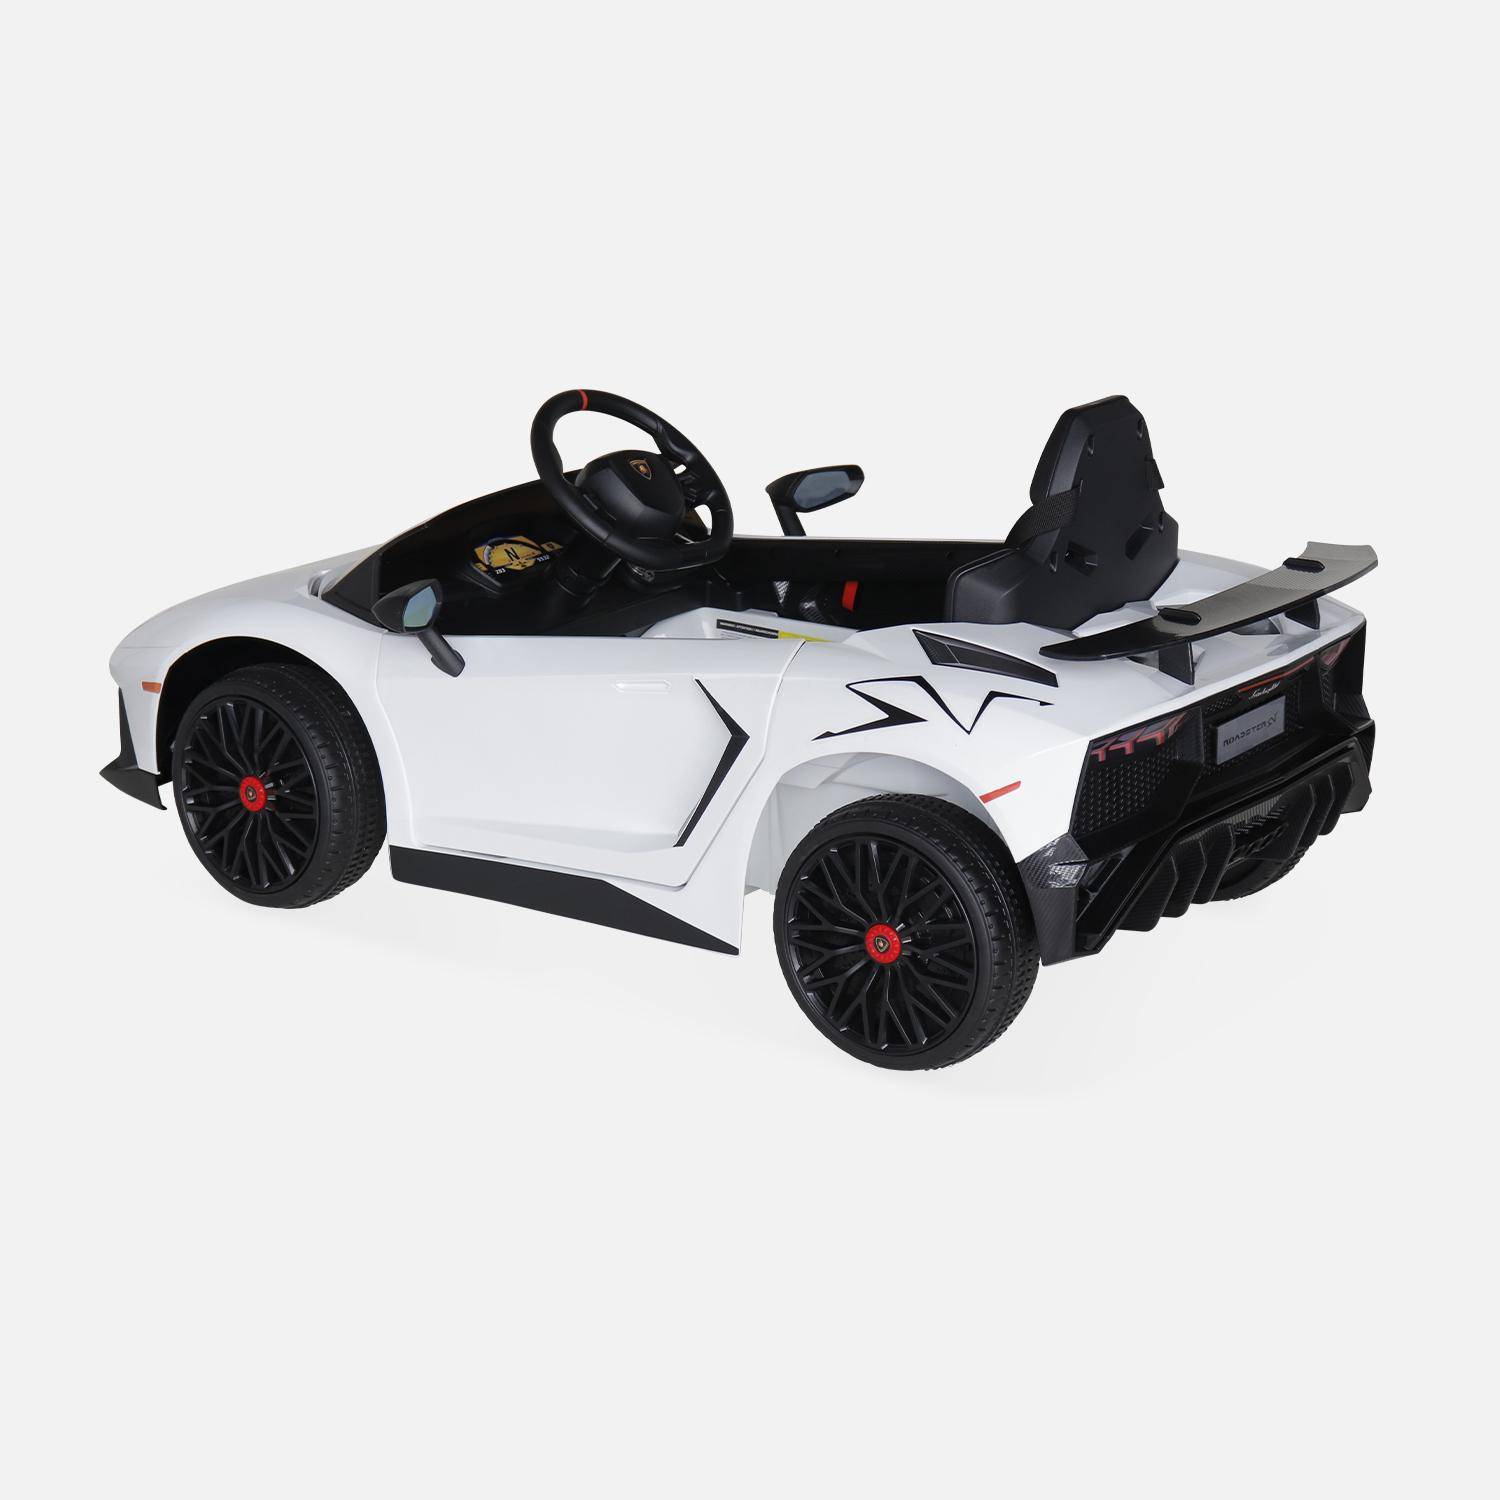 12V Lamborghini elektrische kinderauto, wit, 1 zitplaats, met radio, afstandsbediening, MP3, USB-poort en functionele koplampen,sweeek,Photo4